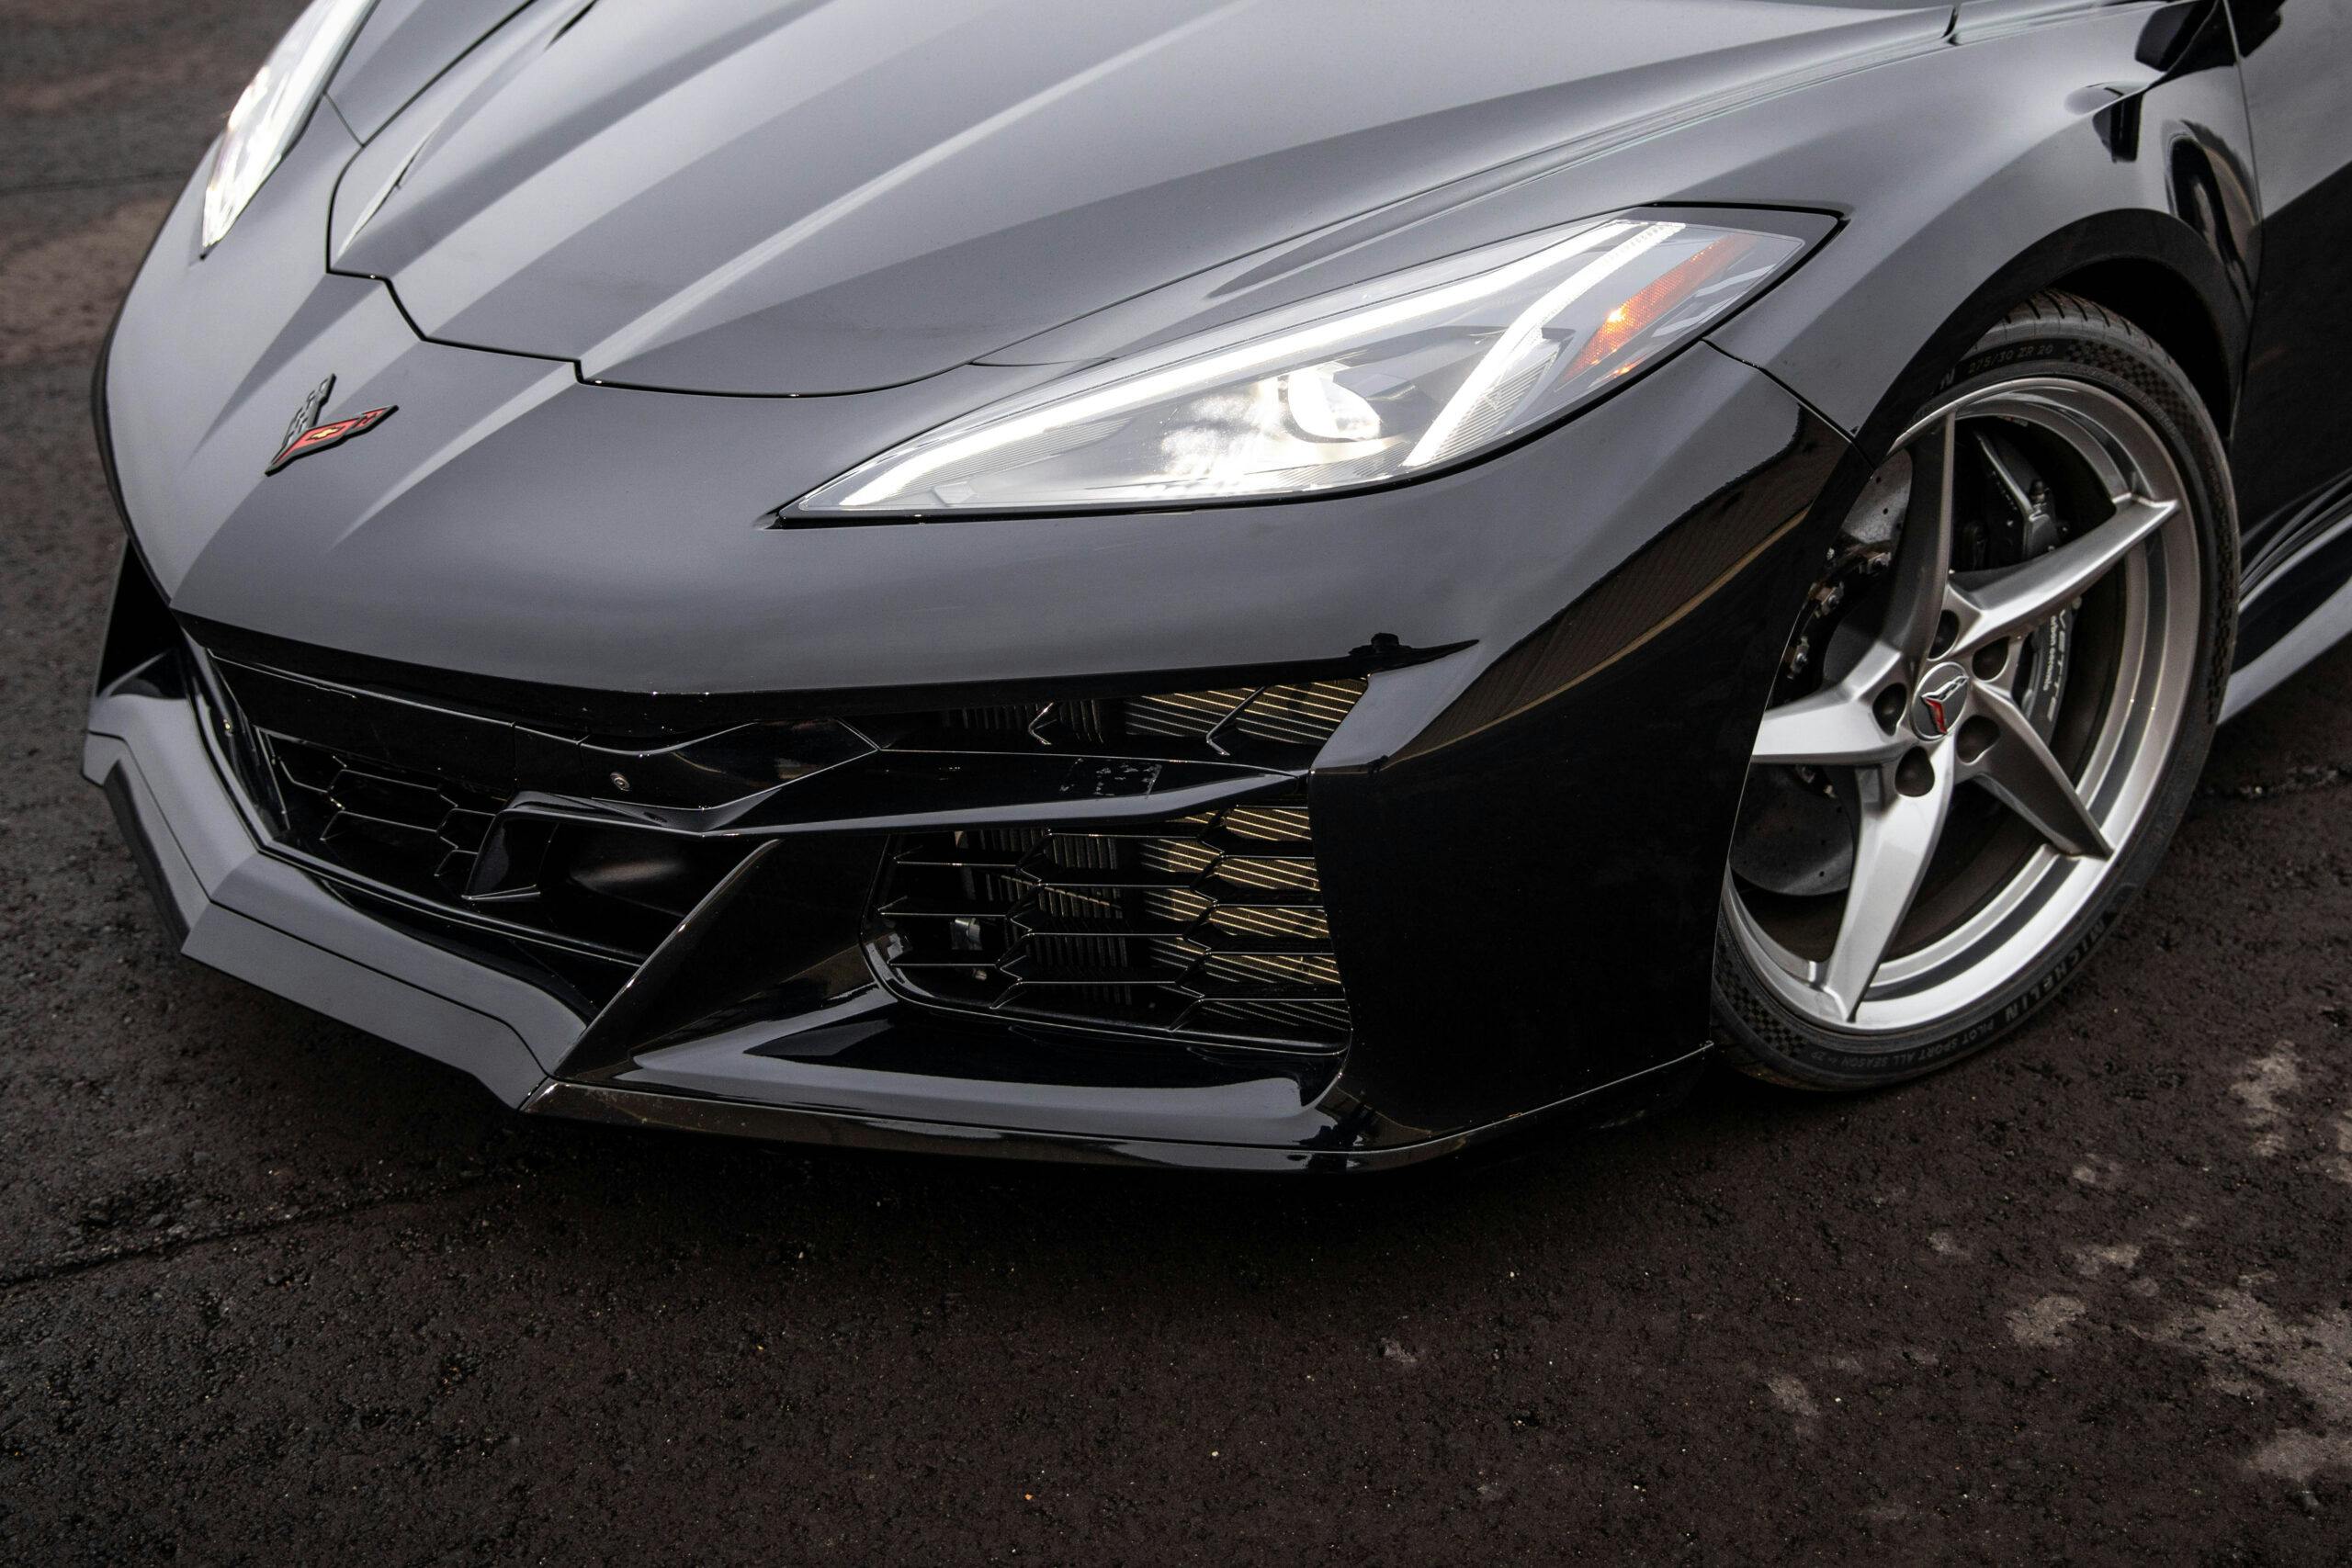 New Corvette E-Ray hybrid front end